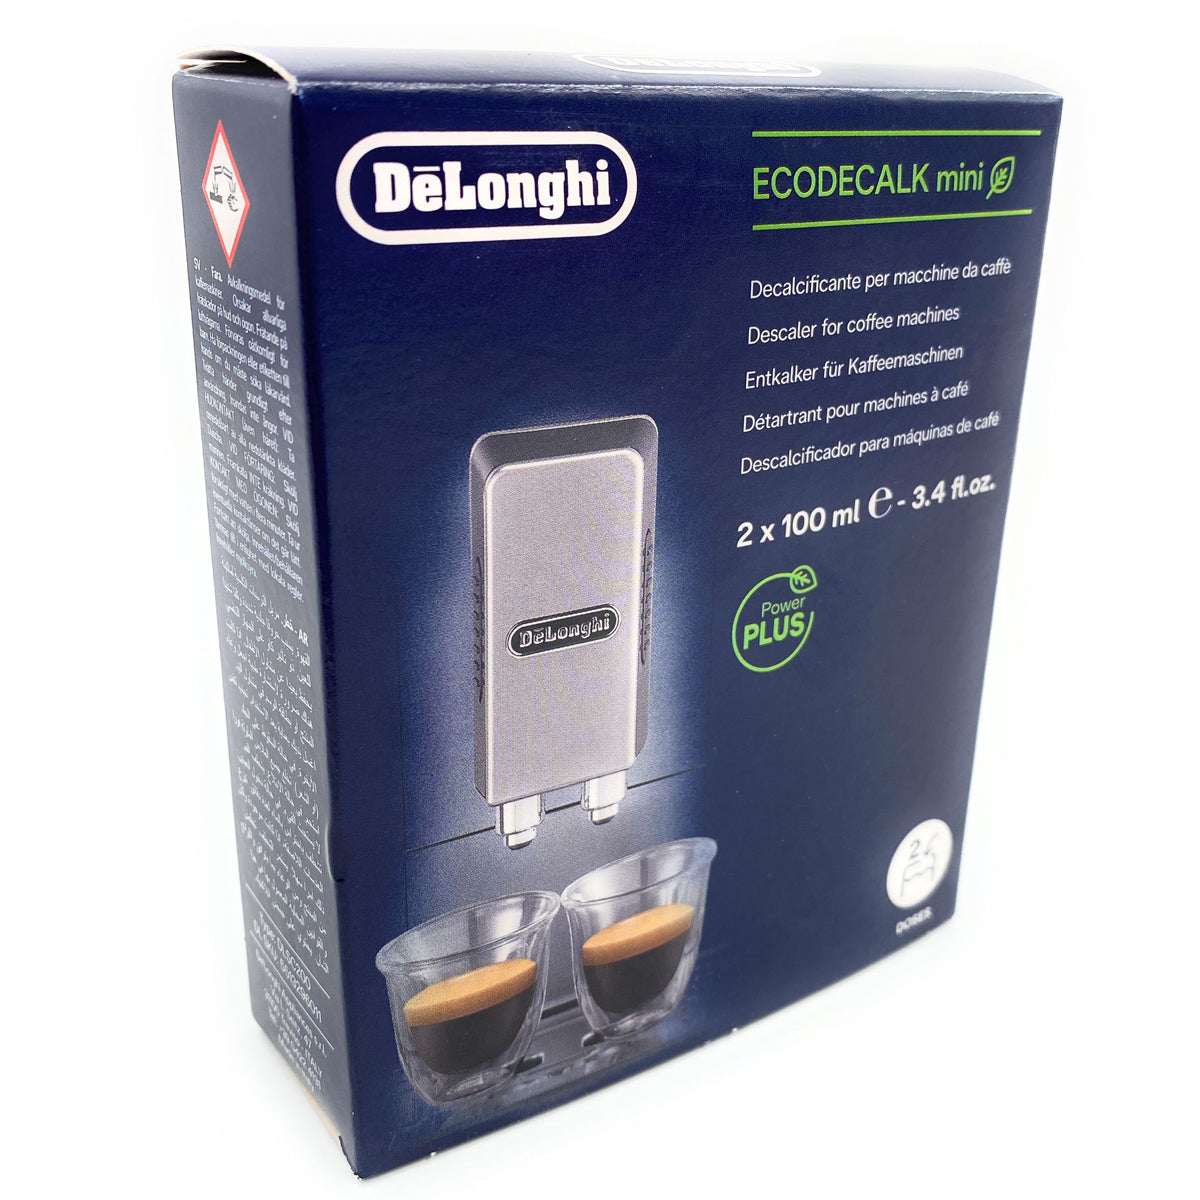 EcoDecalk Delonghi single-dose descaler 5513296031